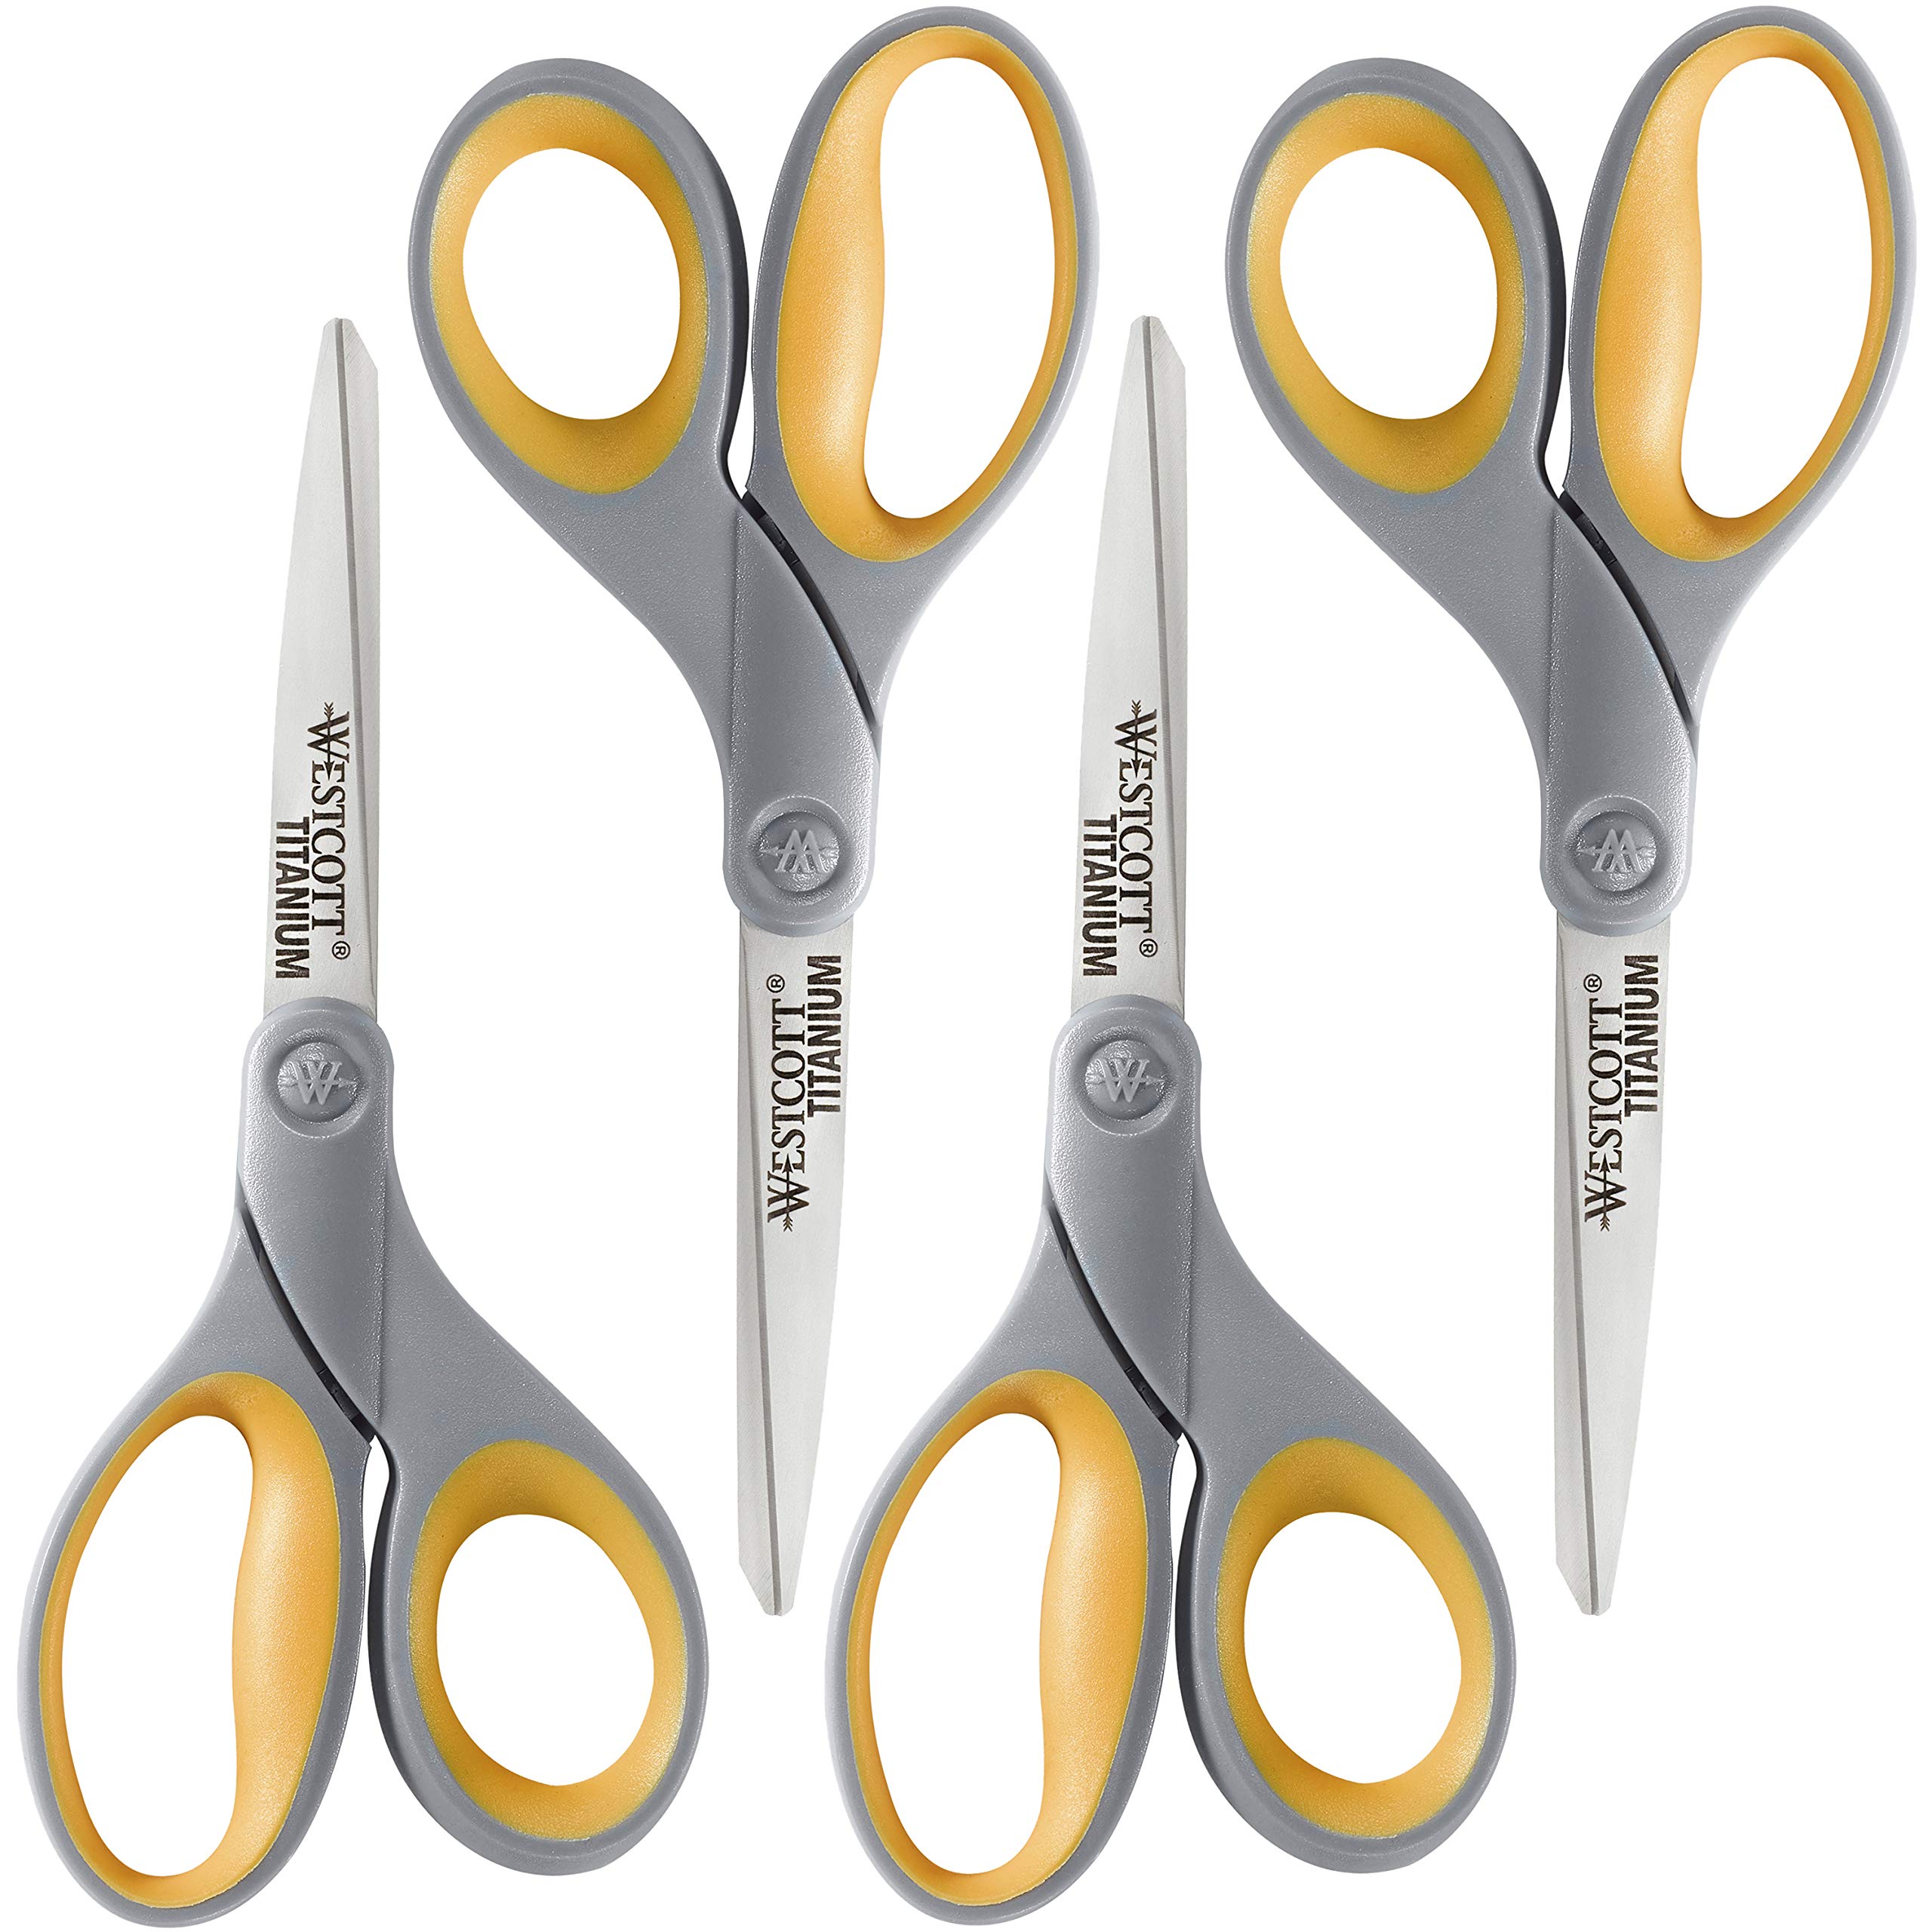 Westcott Titanium Bonded Scissors, Straight, 8 Inches